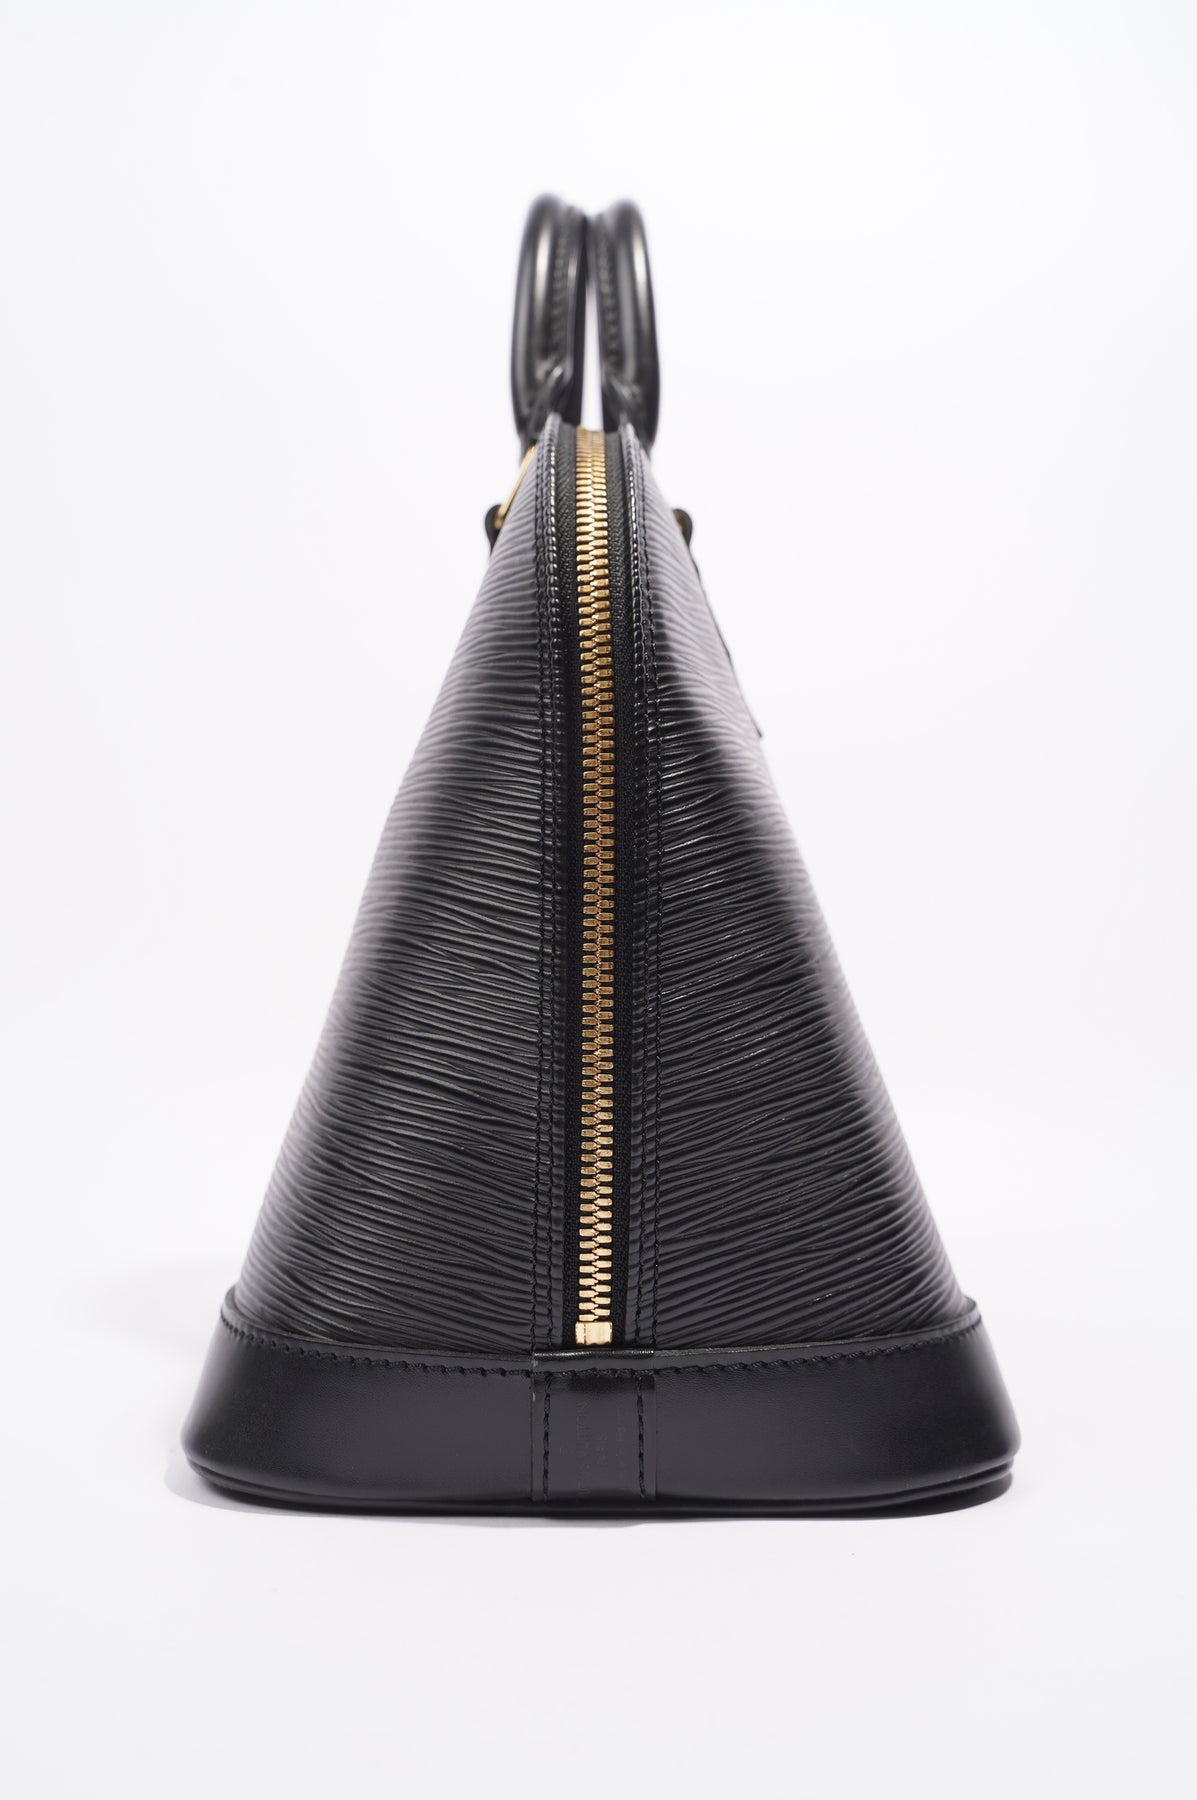 Authentic Louis Vuitton Alma Epi PM Black With Dust Bag